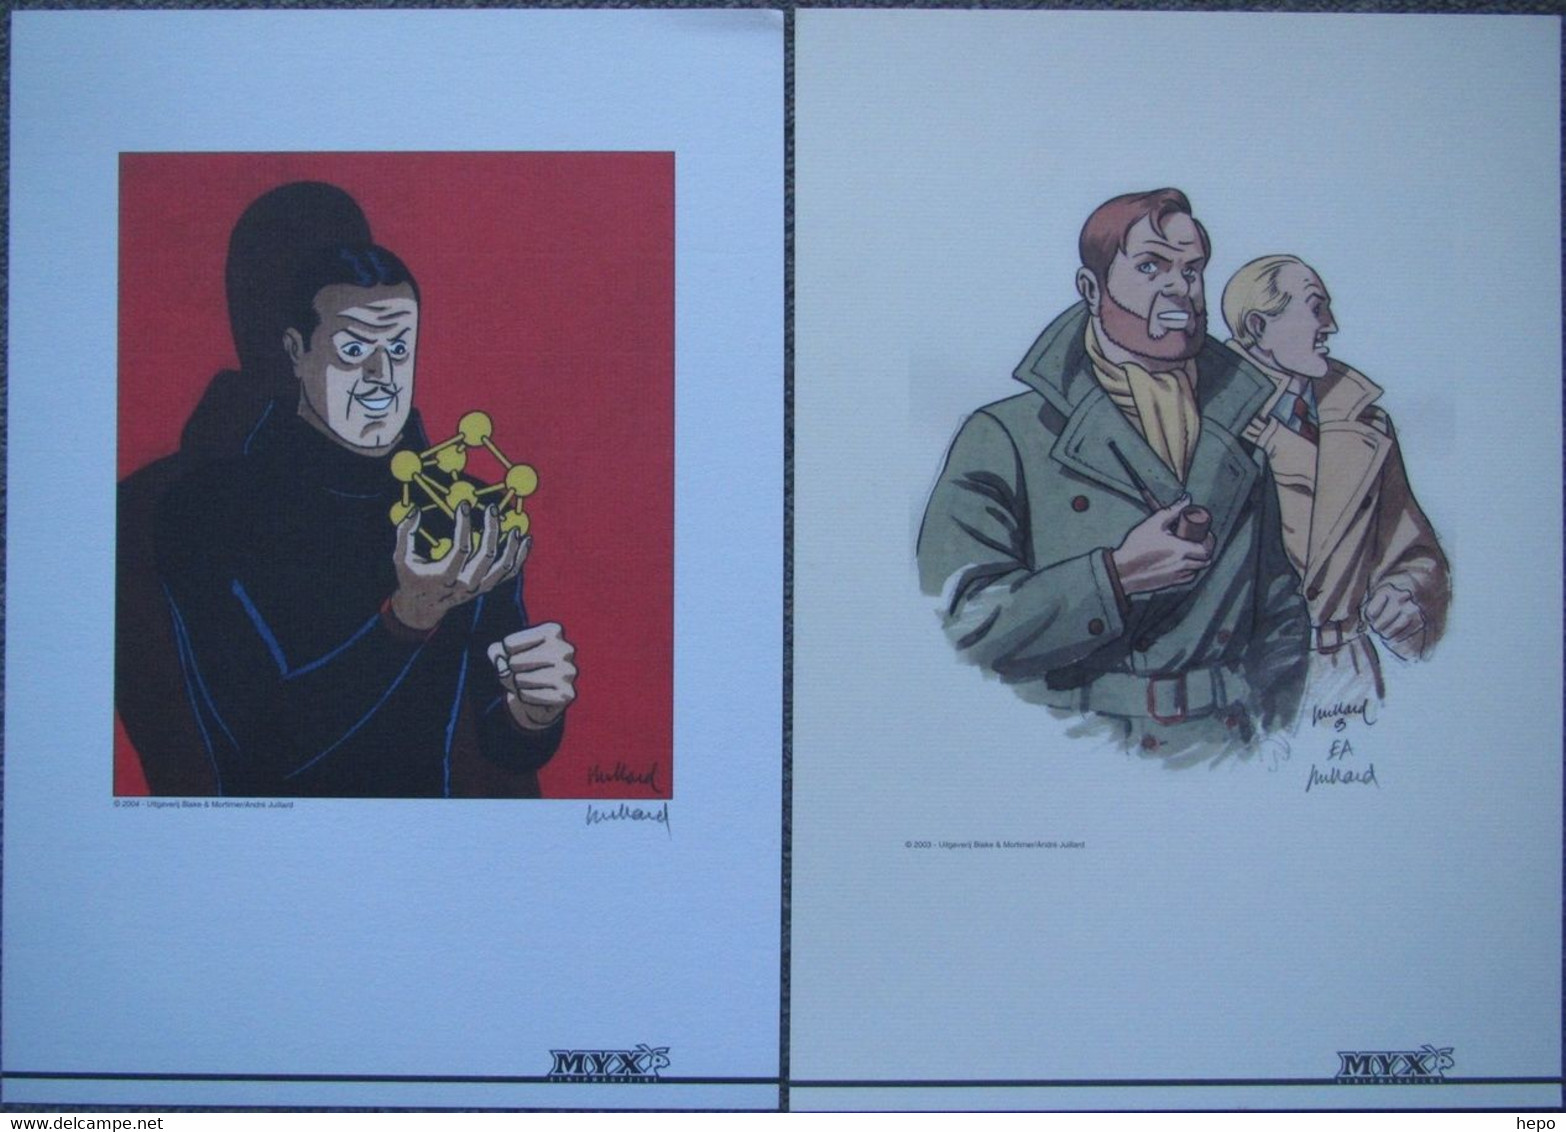 Juillard - Blake Et Mortimer - 2003 Et 2004 - DUO Ex Libris Signé MYX - Sarcophages ? - Illustrateurs J - L